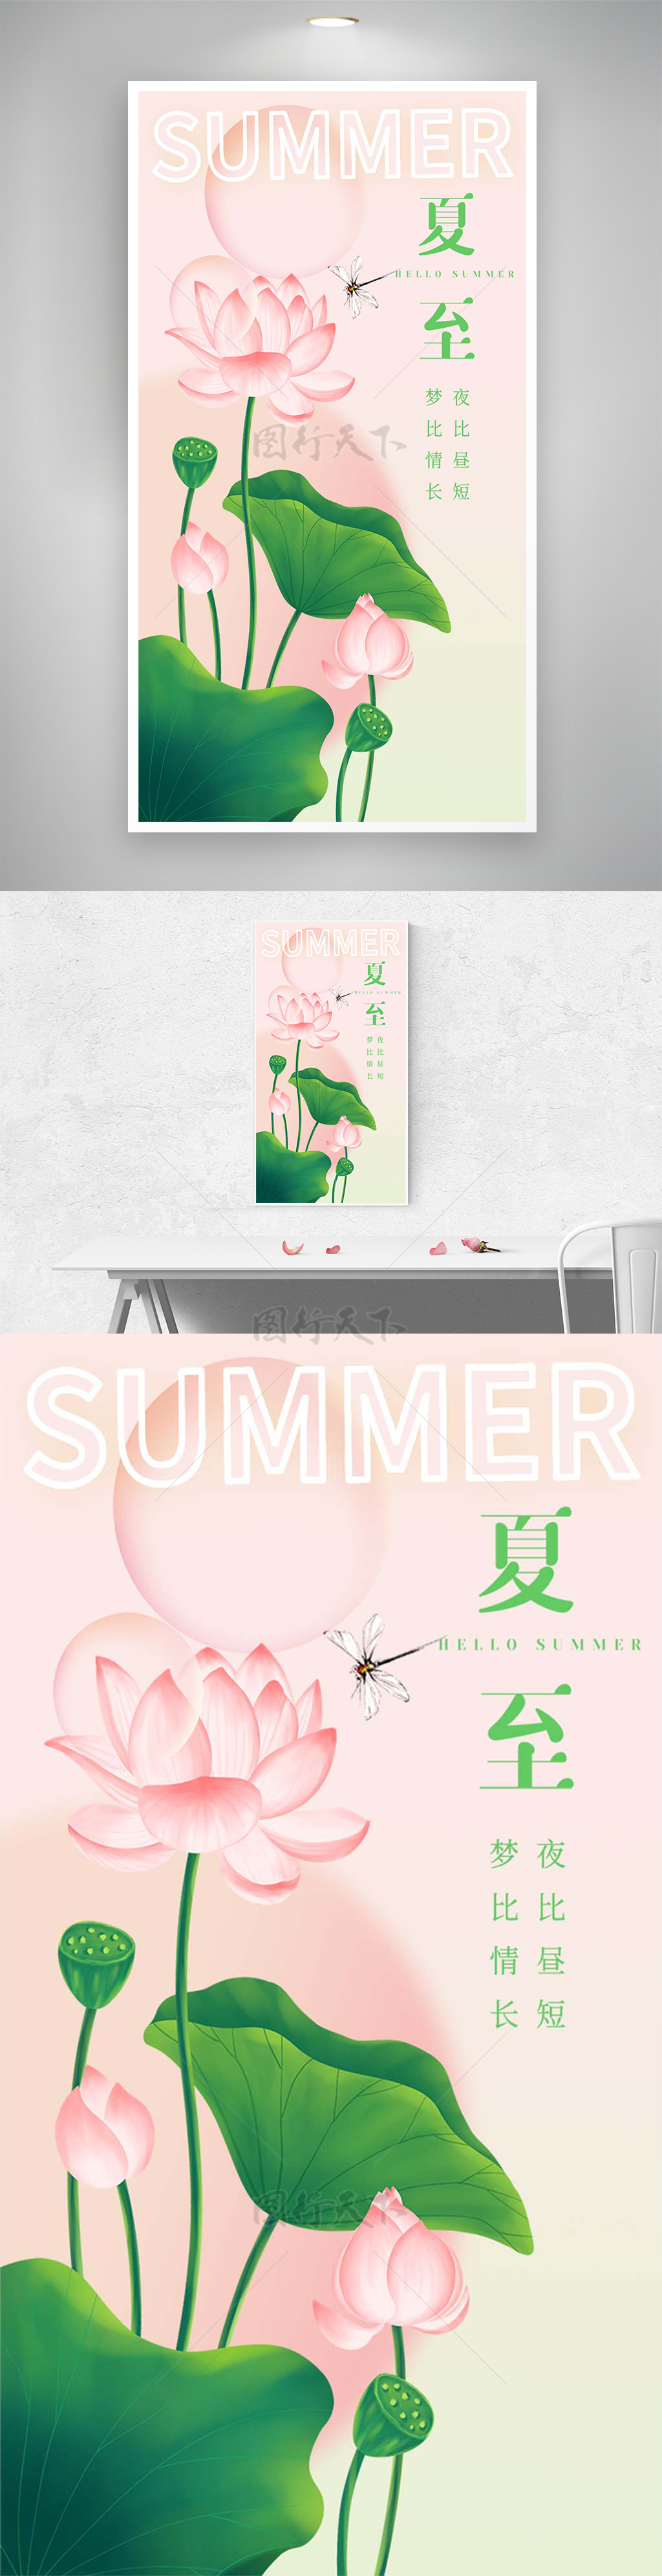 夏至节气节日宣传手绘荷花海报